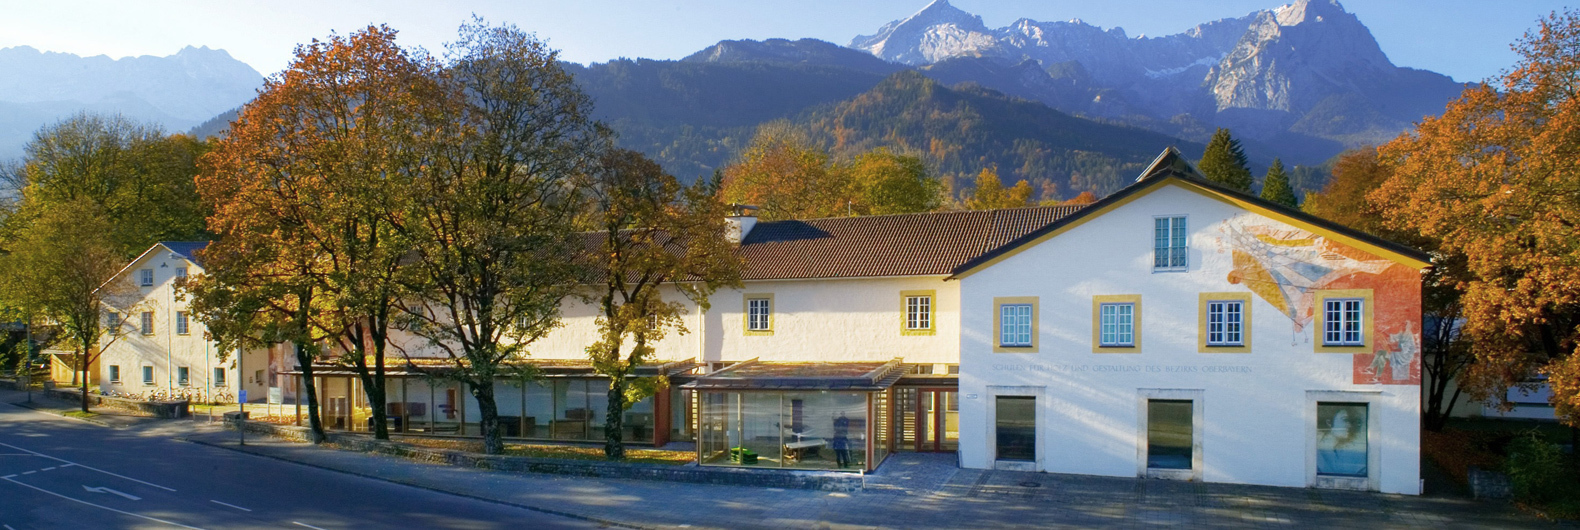 Außenansicht der Schulen für Holz und Gestaltung in Garmisch-Partenkirchen im Herbst: ein langgezogenes Gebäude mit Dreiecksgiebel und bemalter Fassade, davor Bäume und eine Straße. Im Hintergrund sieht man die Berge.